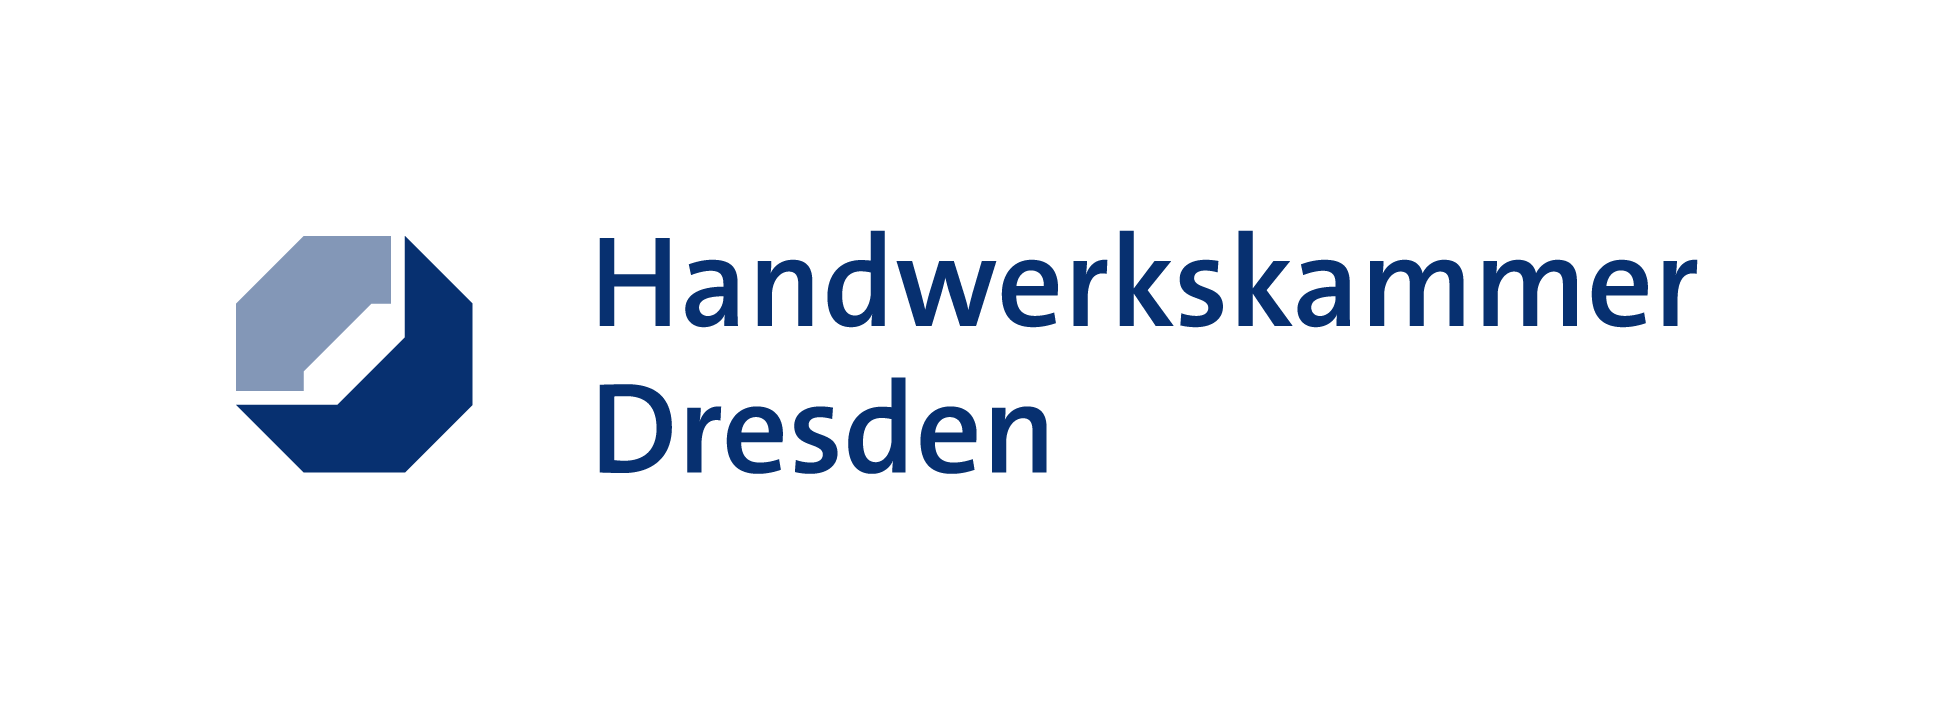 HWK-Dresden-RGB.png